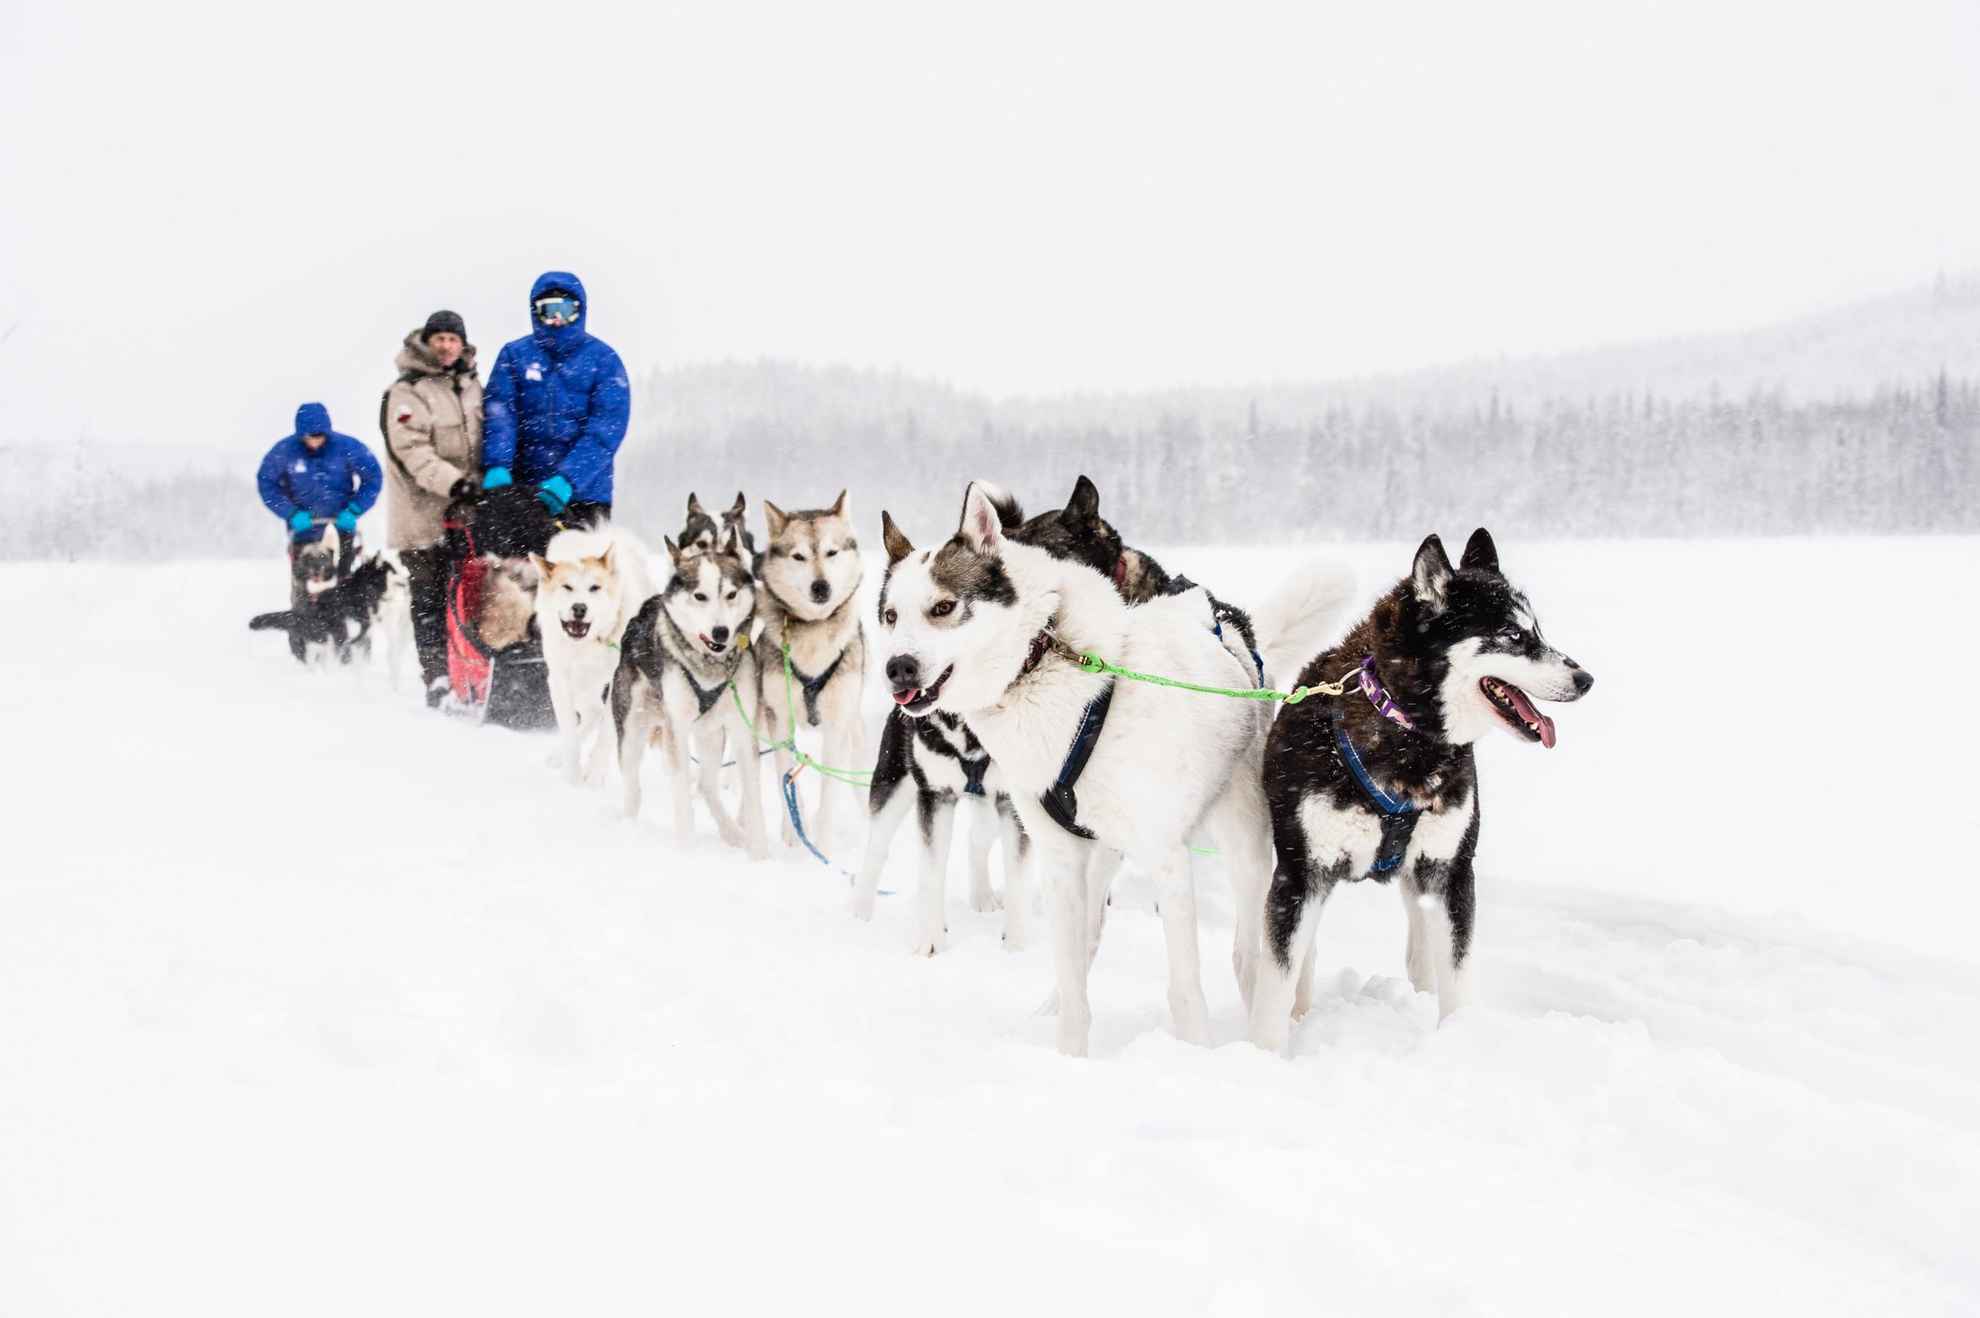 Un traîneau à chiens avec plusieurs chiens et deux personnes sur le traîneau, dans un paysage enneigé.